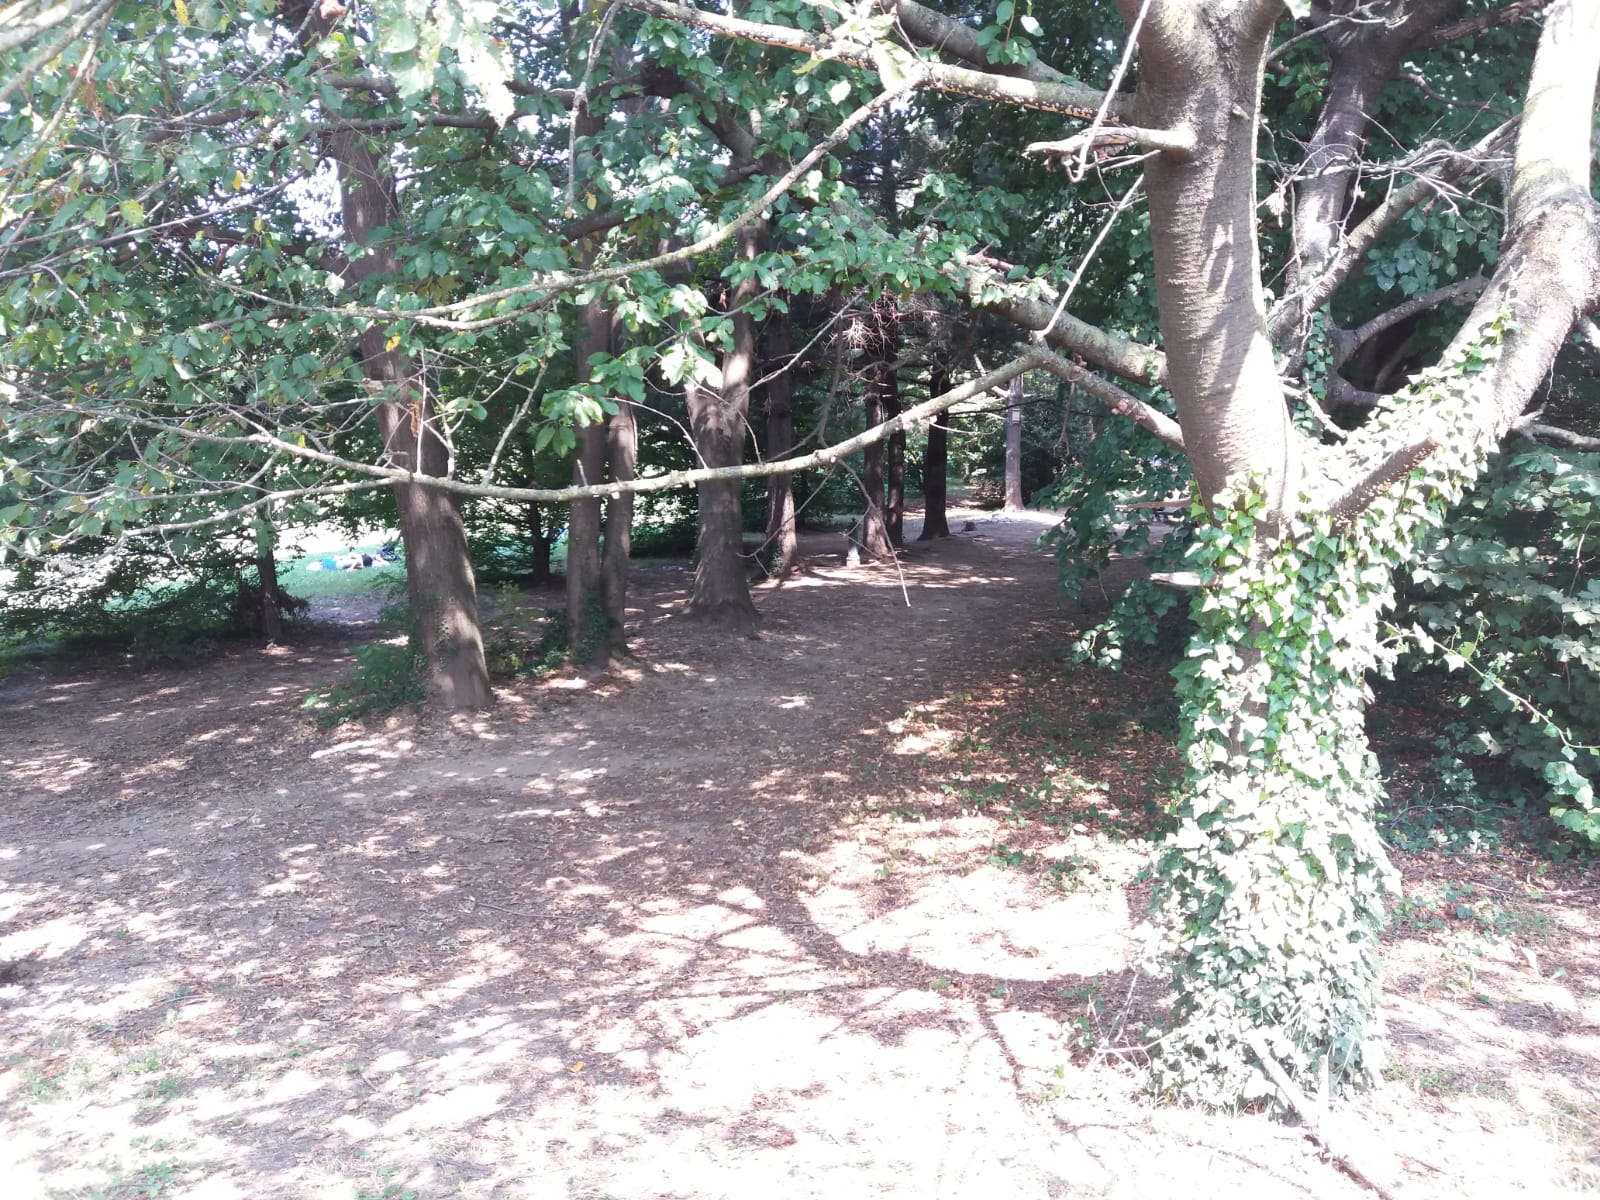 Parco Lura, area pic-nic Fagioli: “Pulizia e controlli vengono eseguiti. C’è una questione di buona educazione”